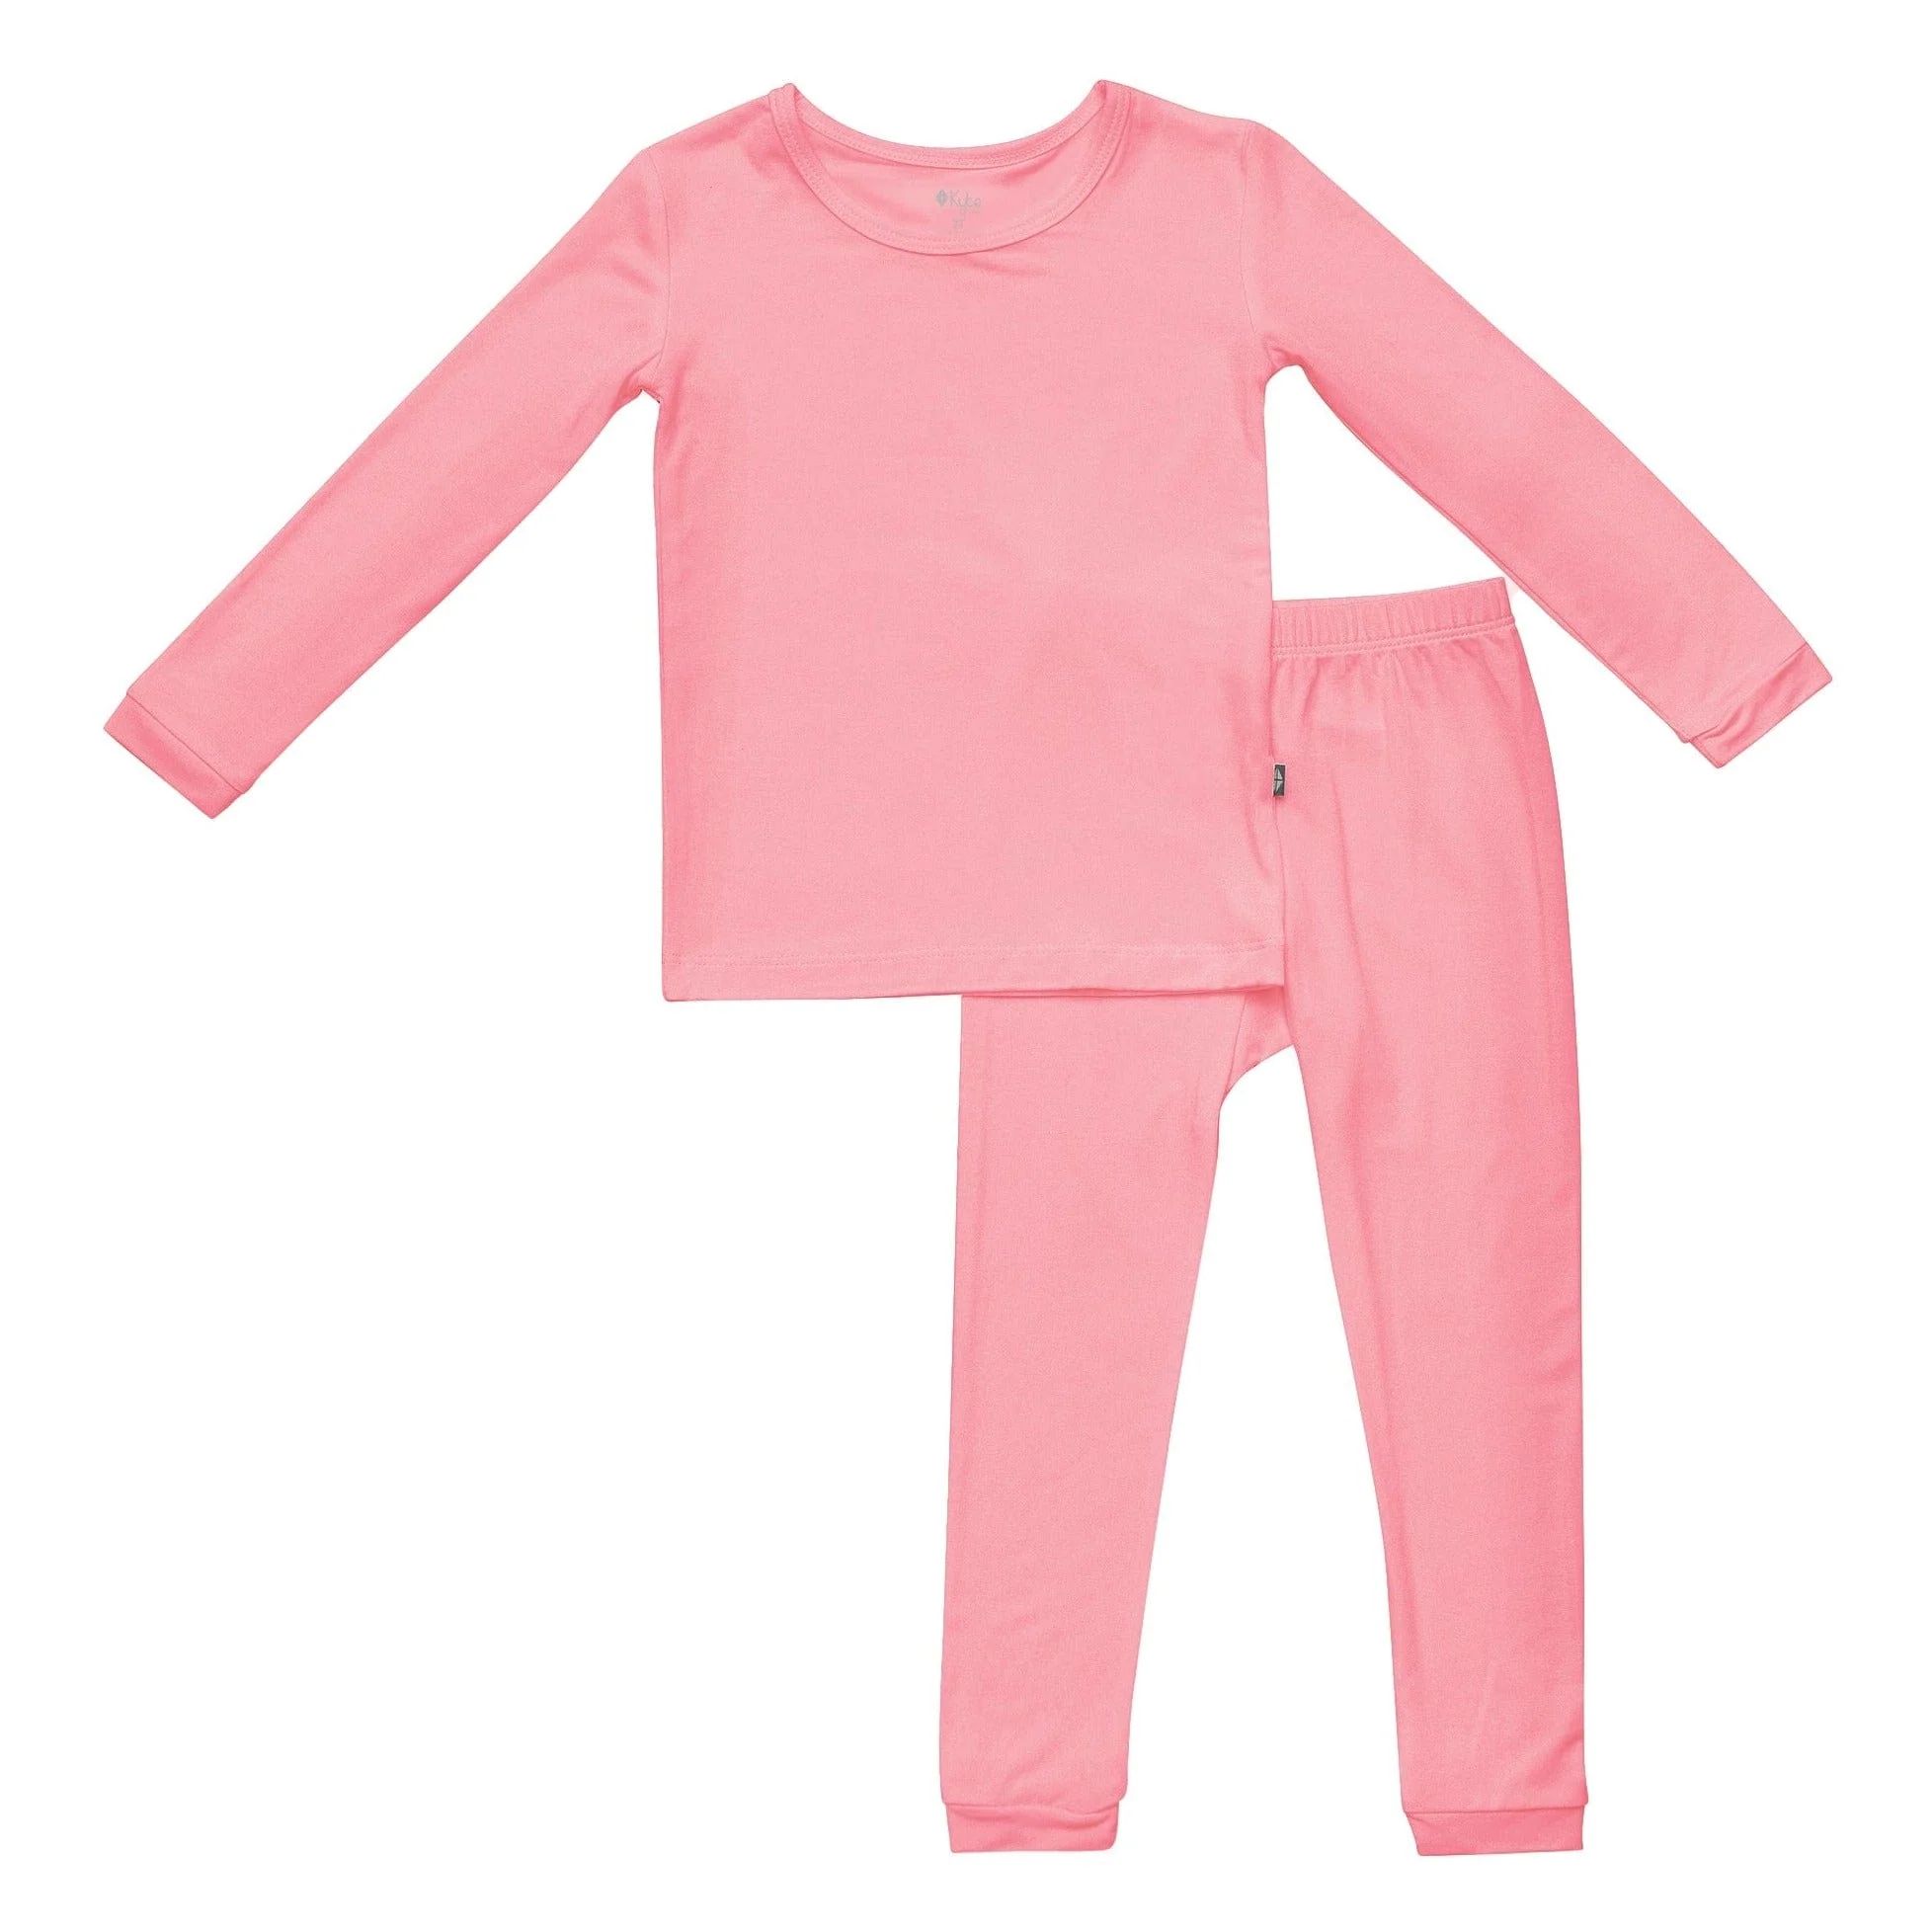 Toddler Pajama Set in Rose | Kyte BABY